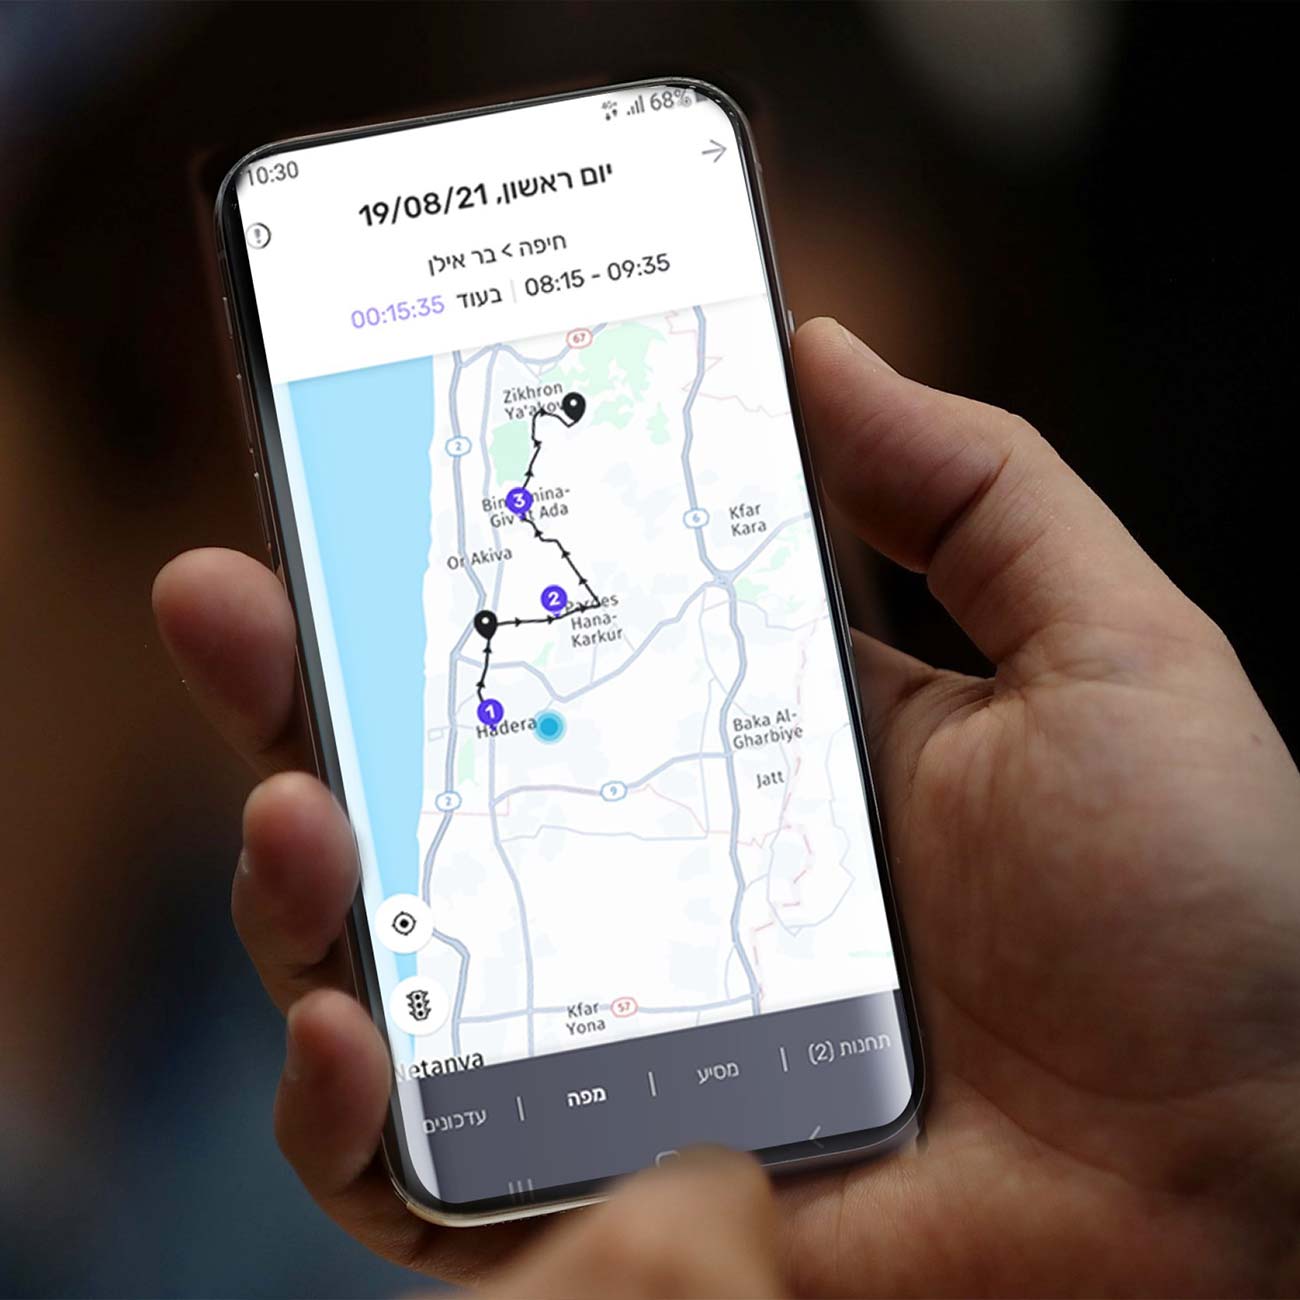 אייפון עם מסך אפליקציית מסלול המציג נקודות מיקום